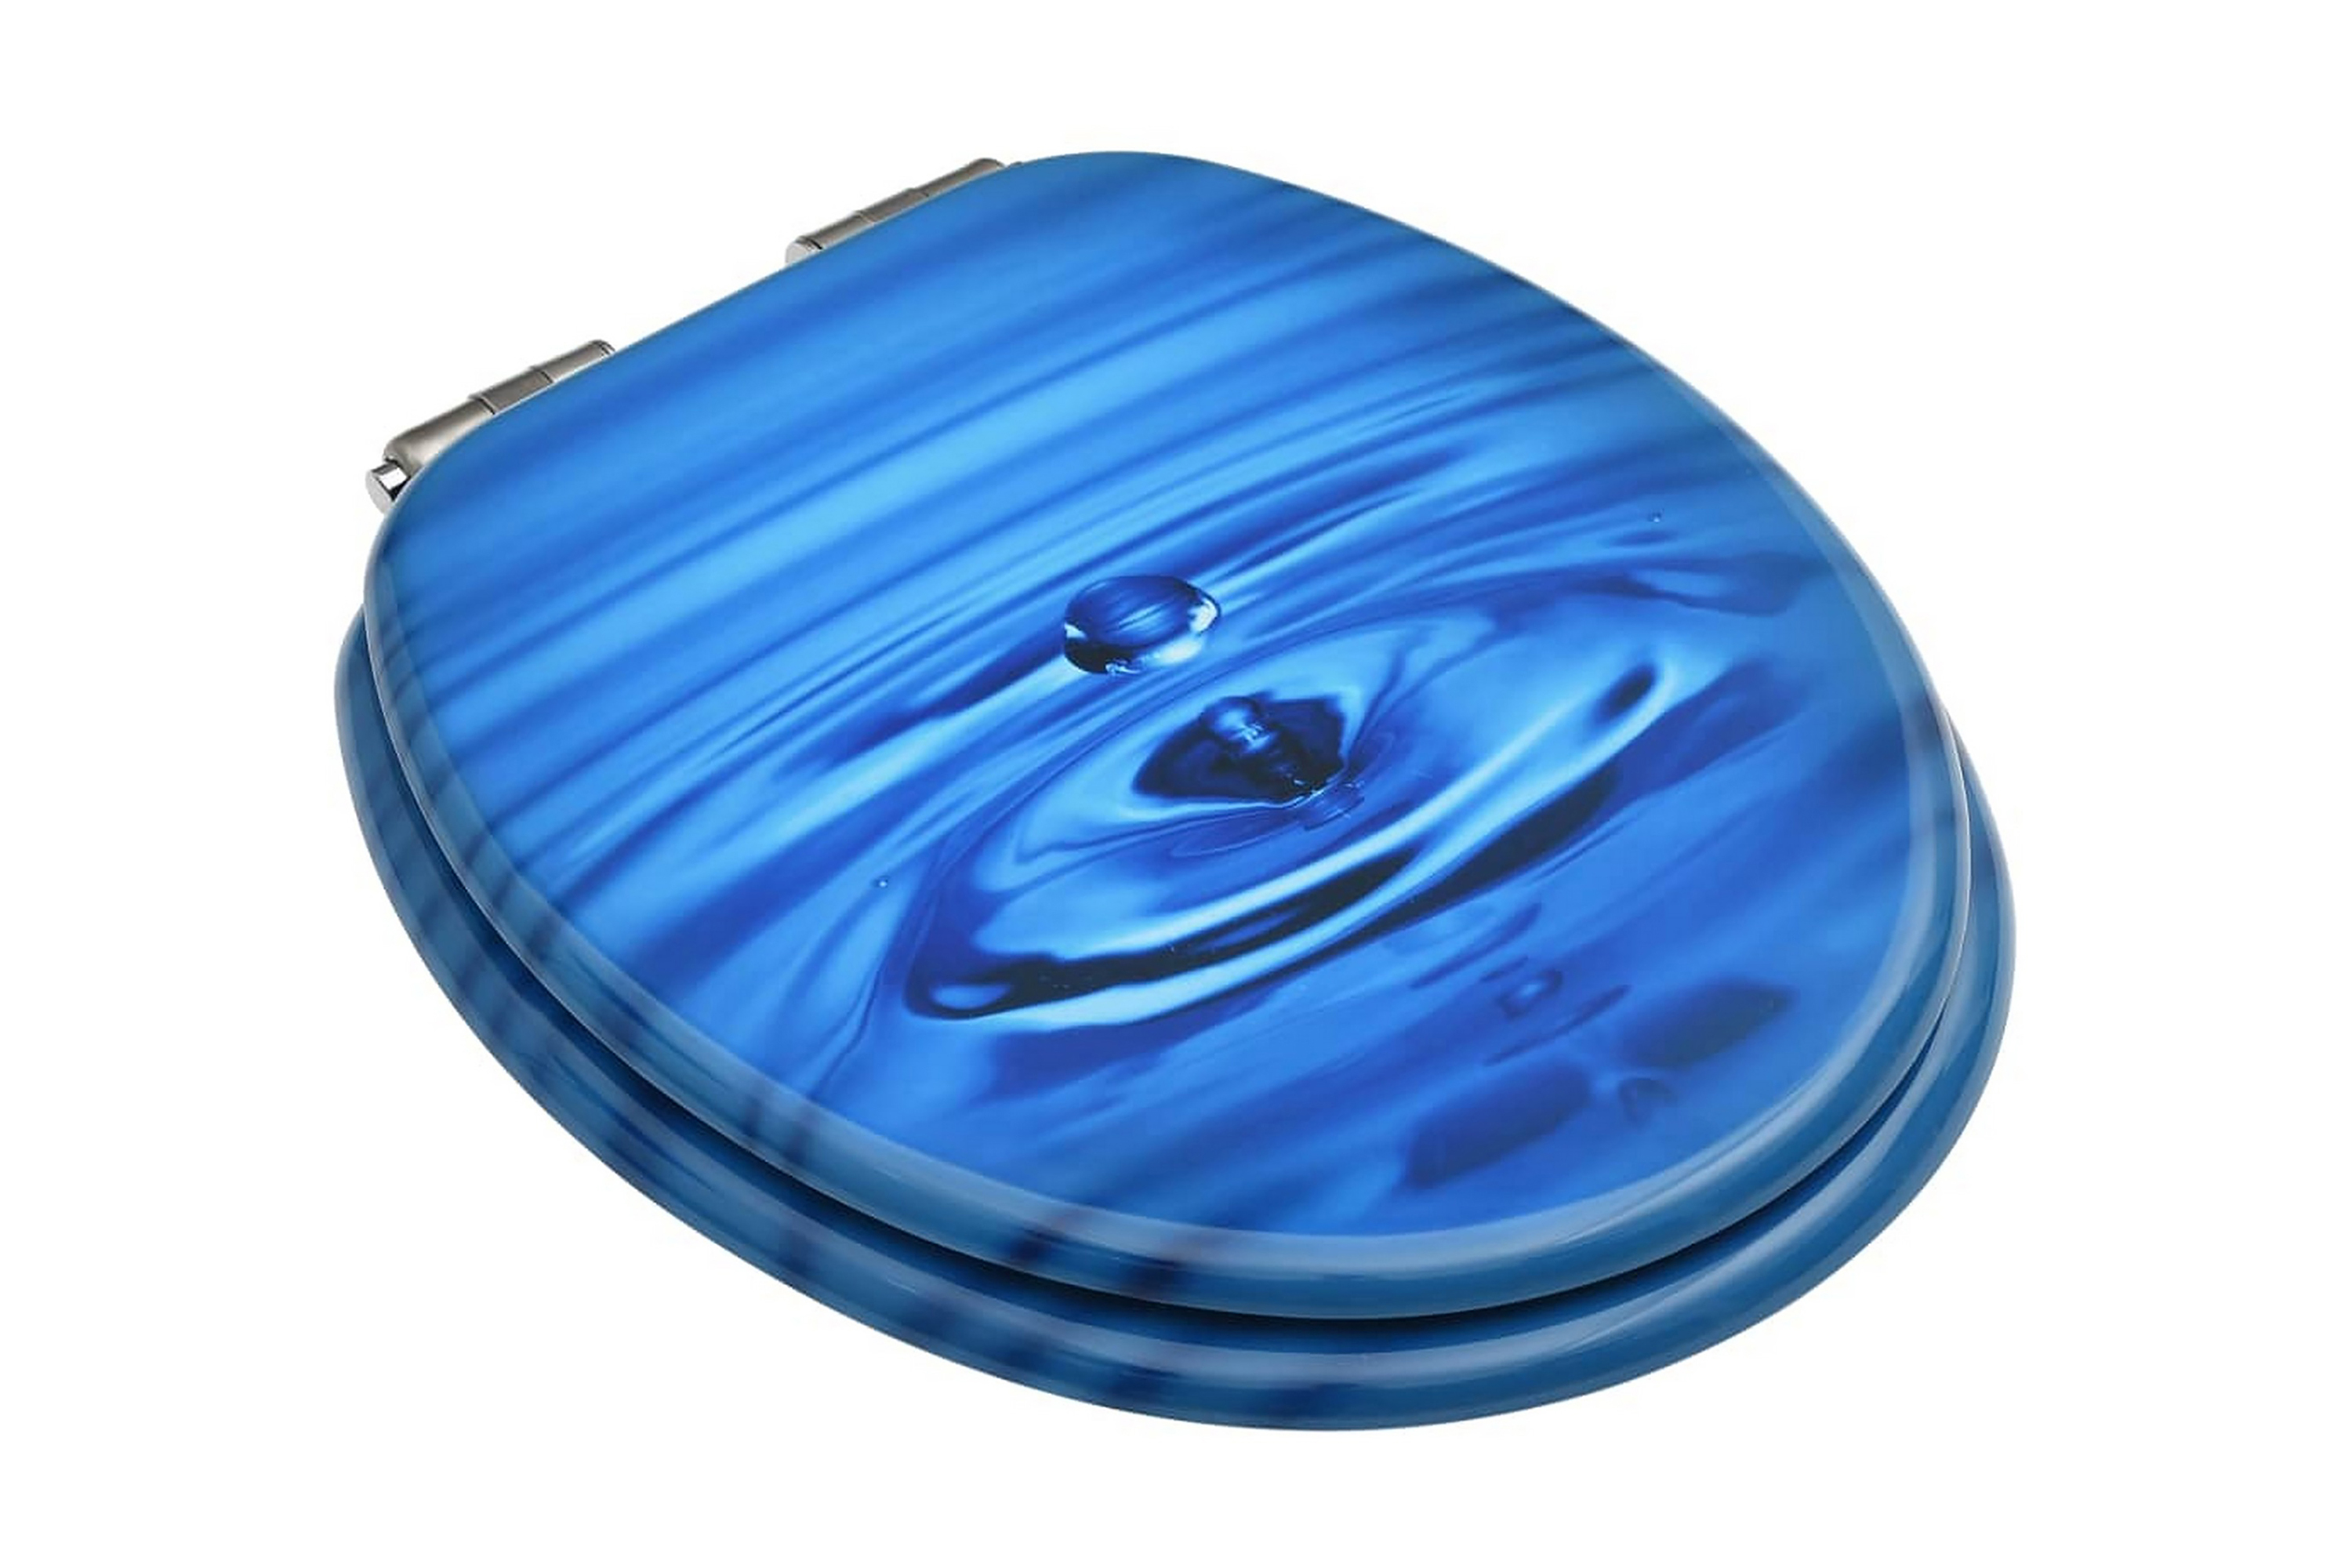 Toalettsete med myk lukkefunksjon MDF blå vanndråpe-design -